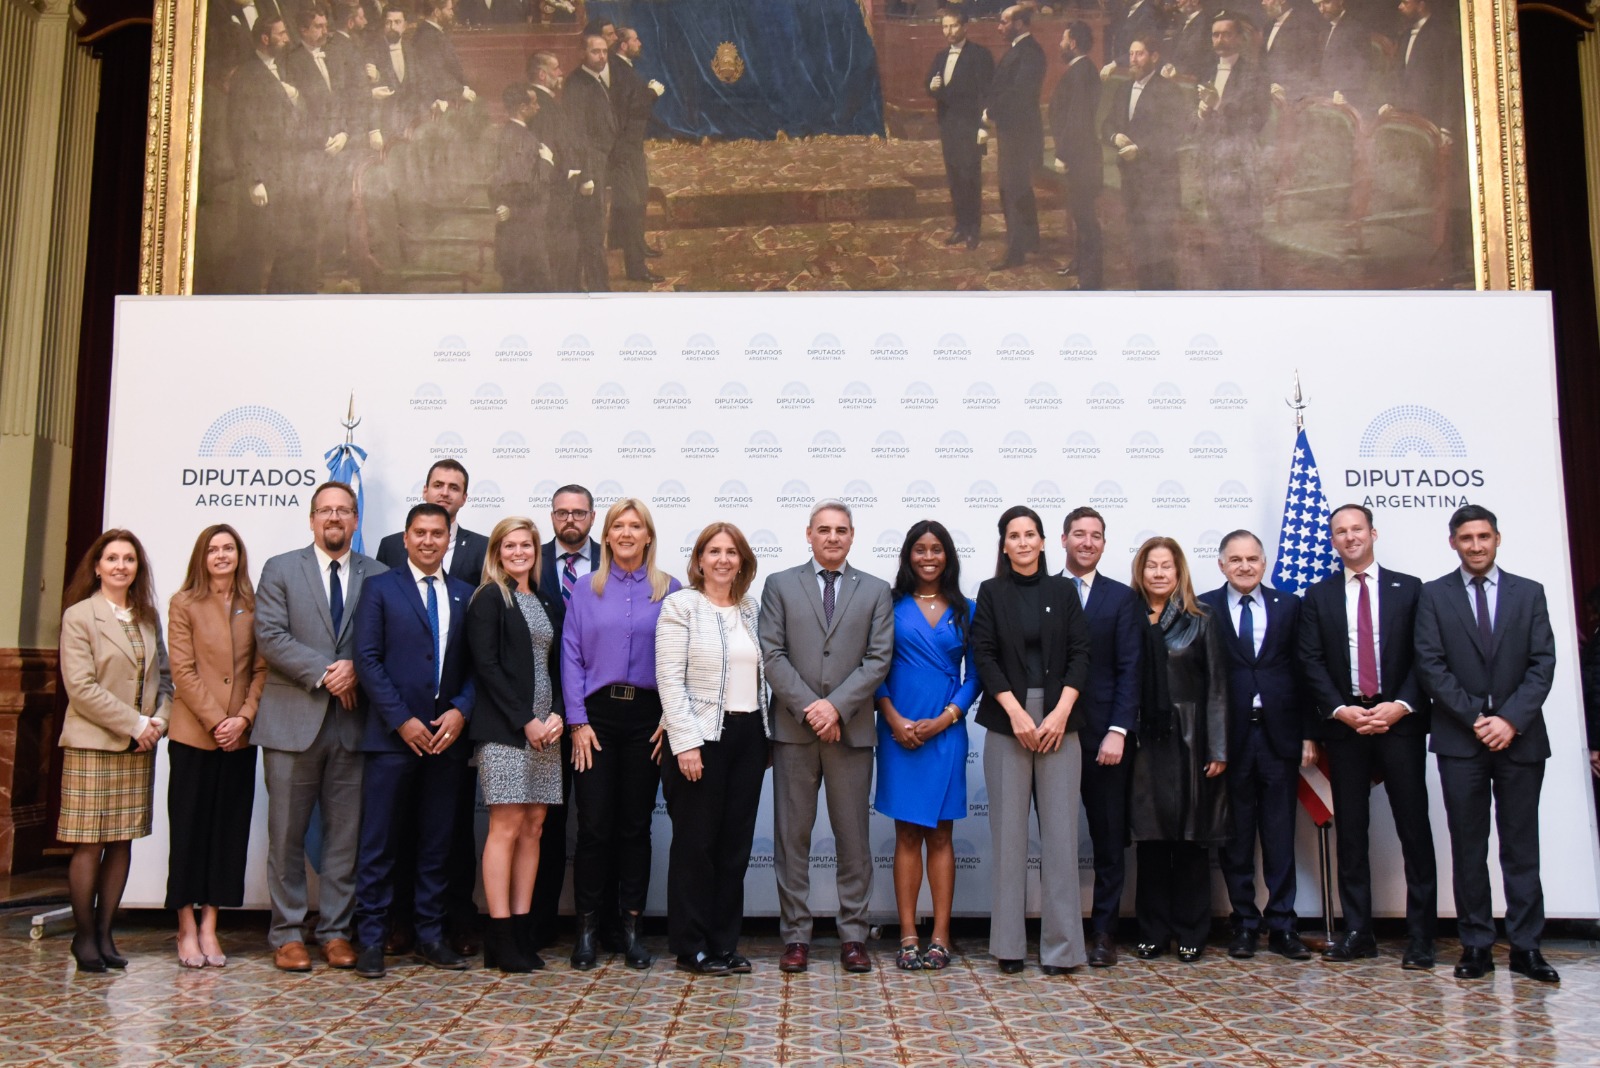 Funcionarias y funcionarios del Congreso de EE.UU. visitaron la HCDN para fortalecer la cooperación y el trabajo parlamentario